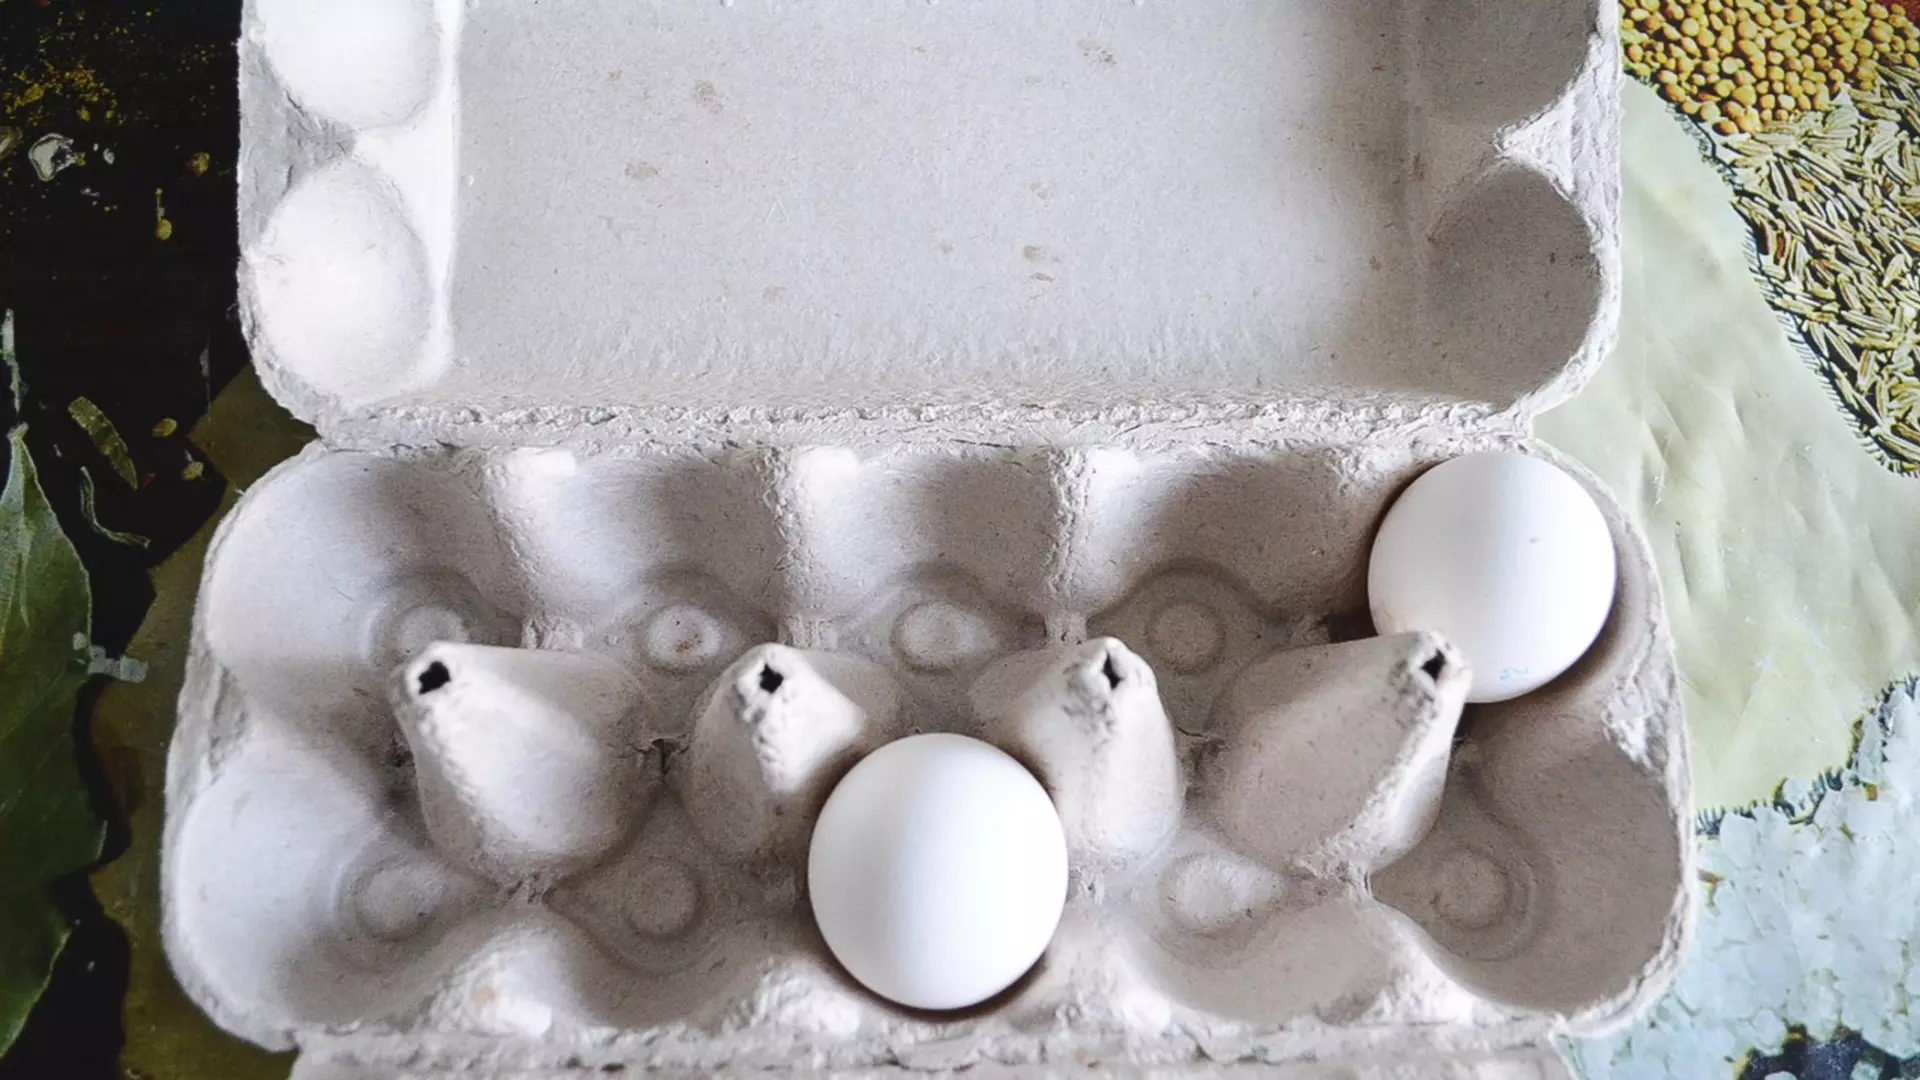 Цены на яйца в магазинах Карелии побили очередной рекорд